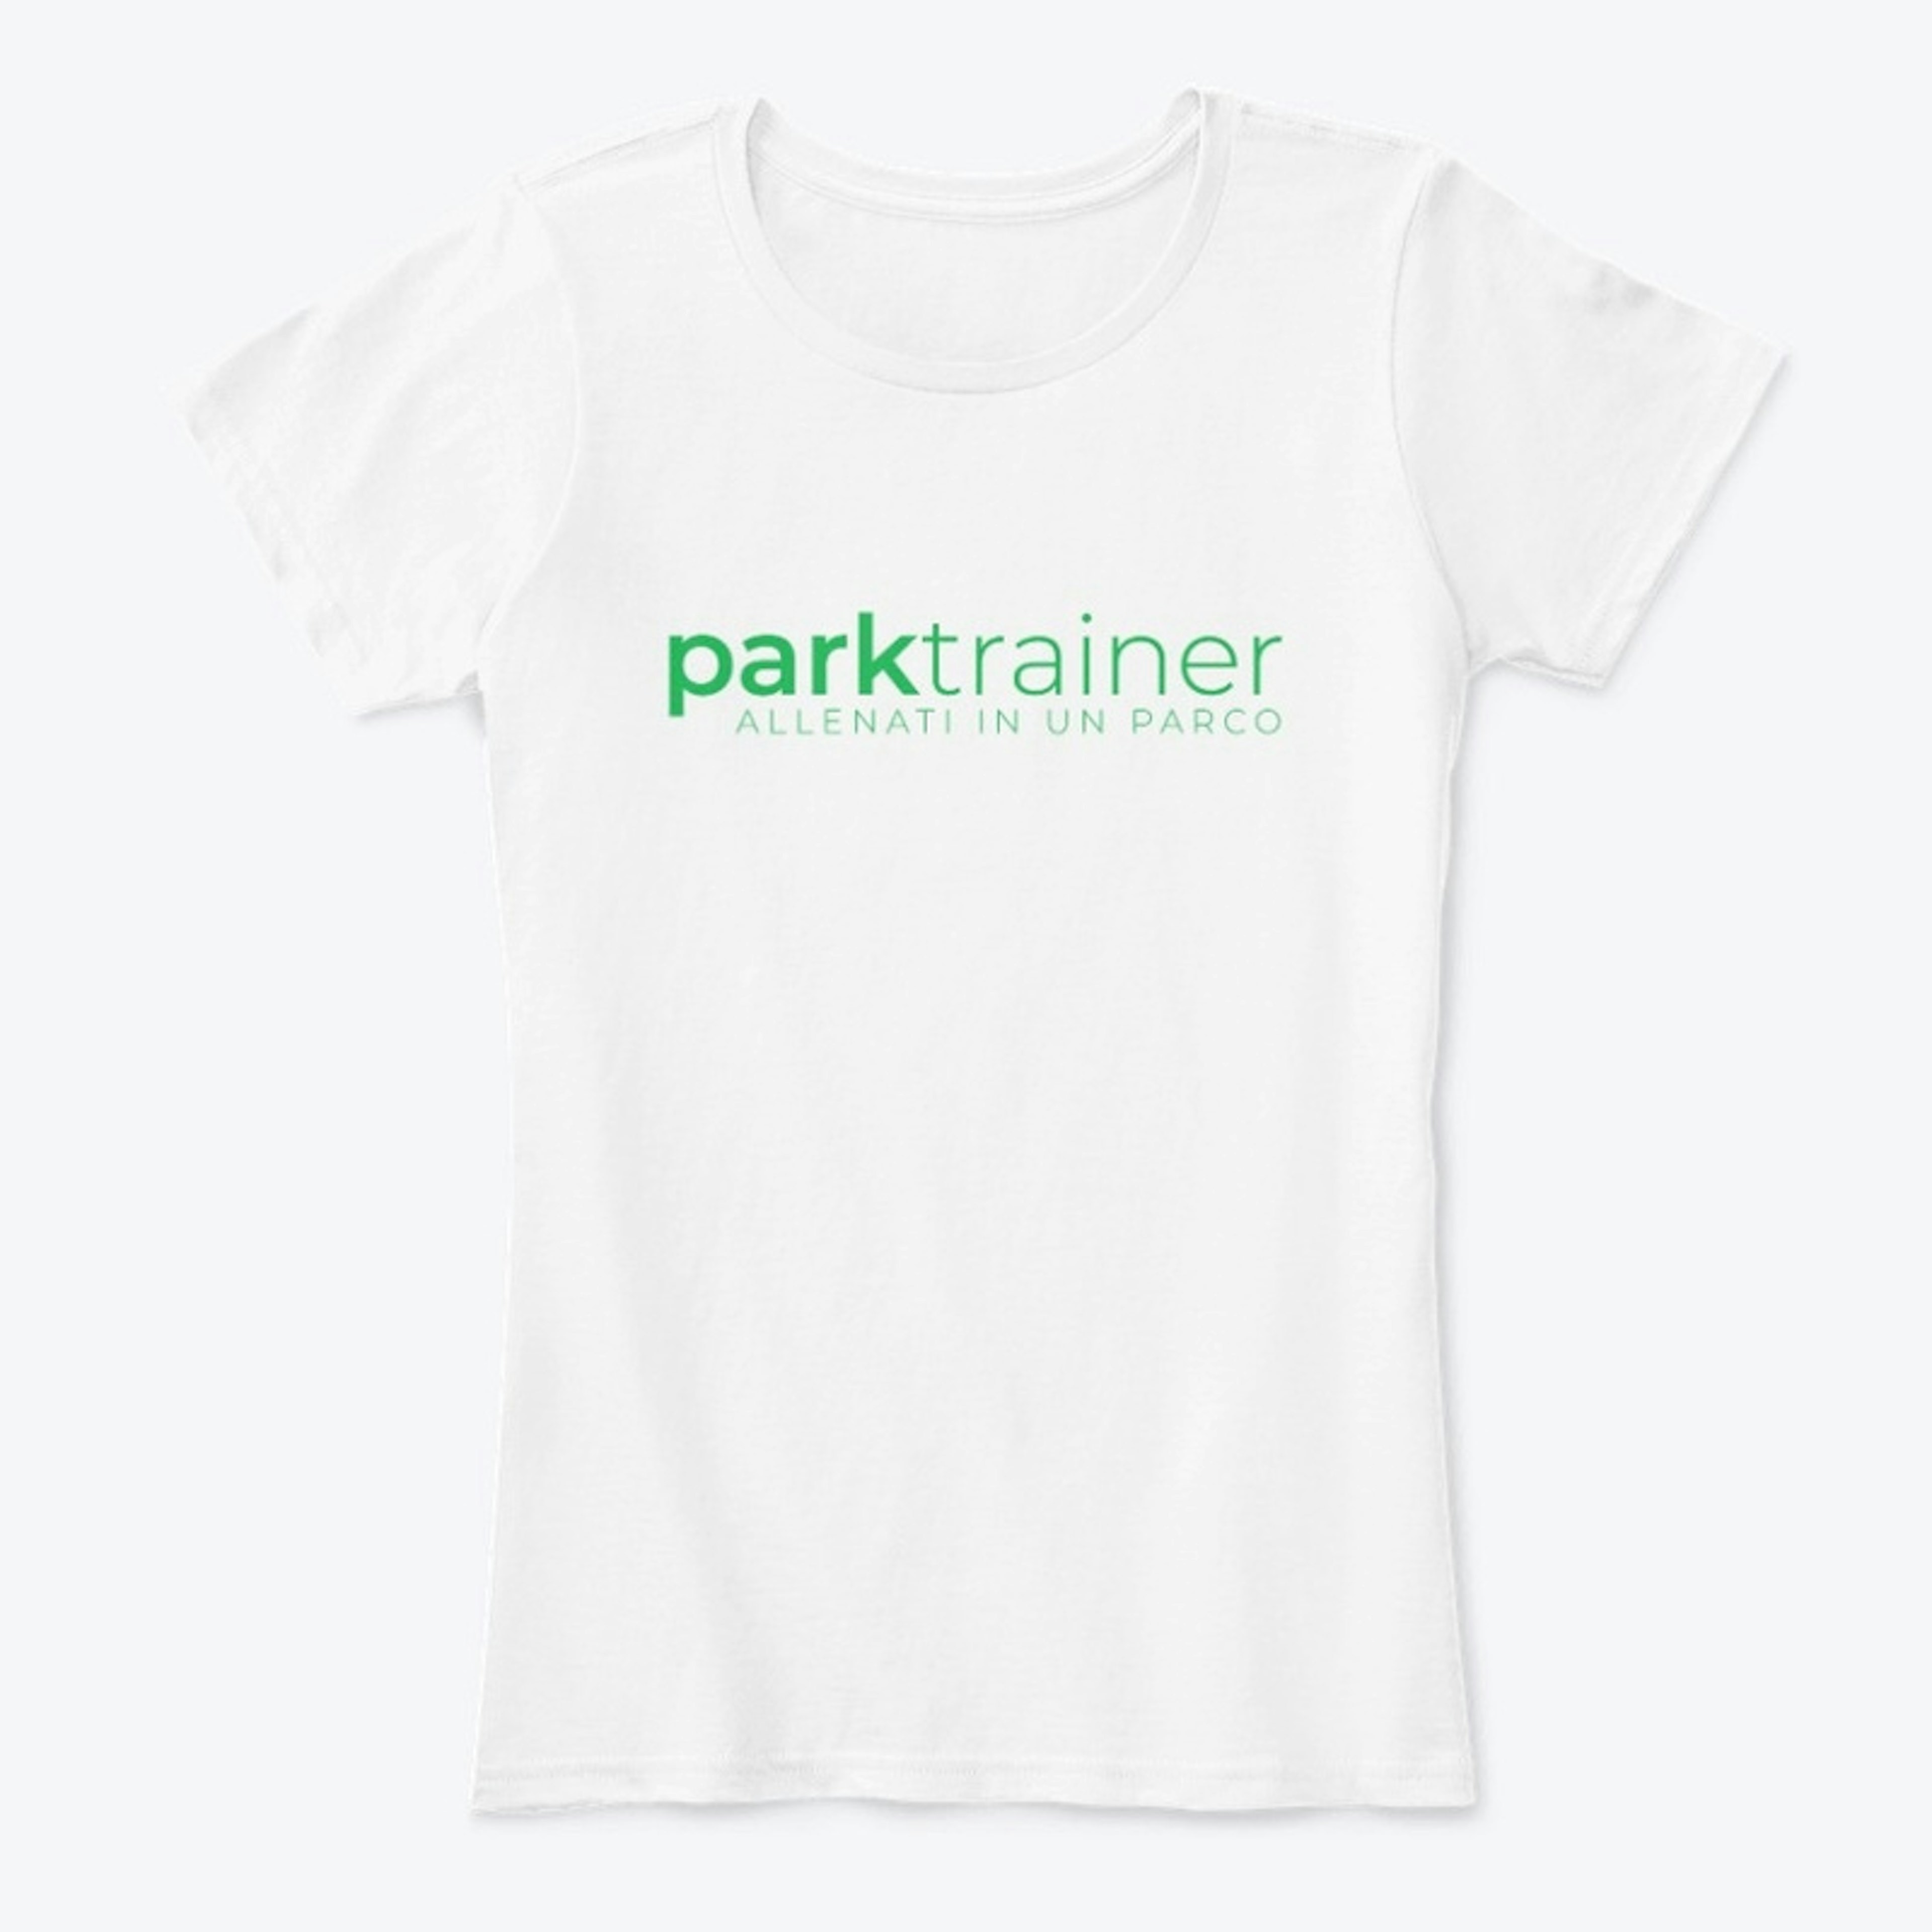 Parktrainer - Allenati in un Parco